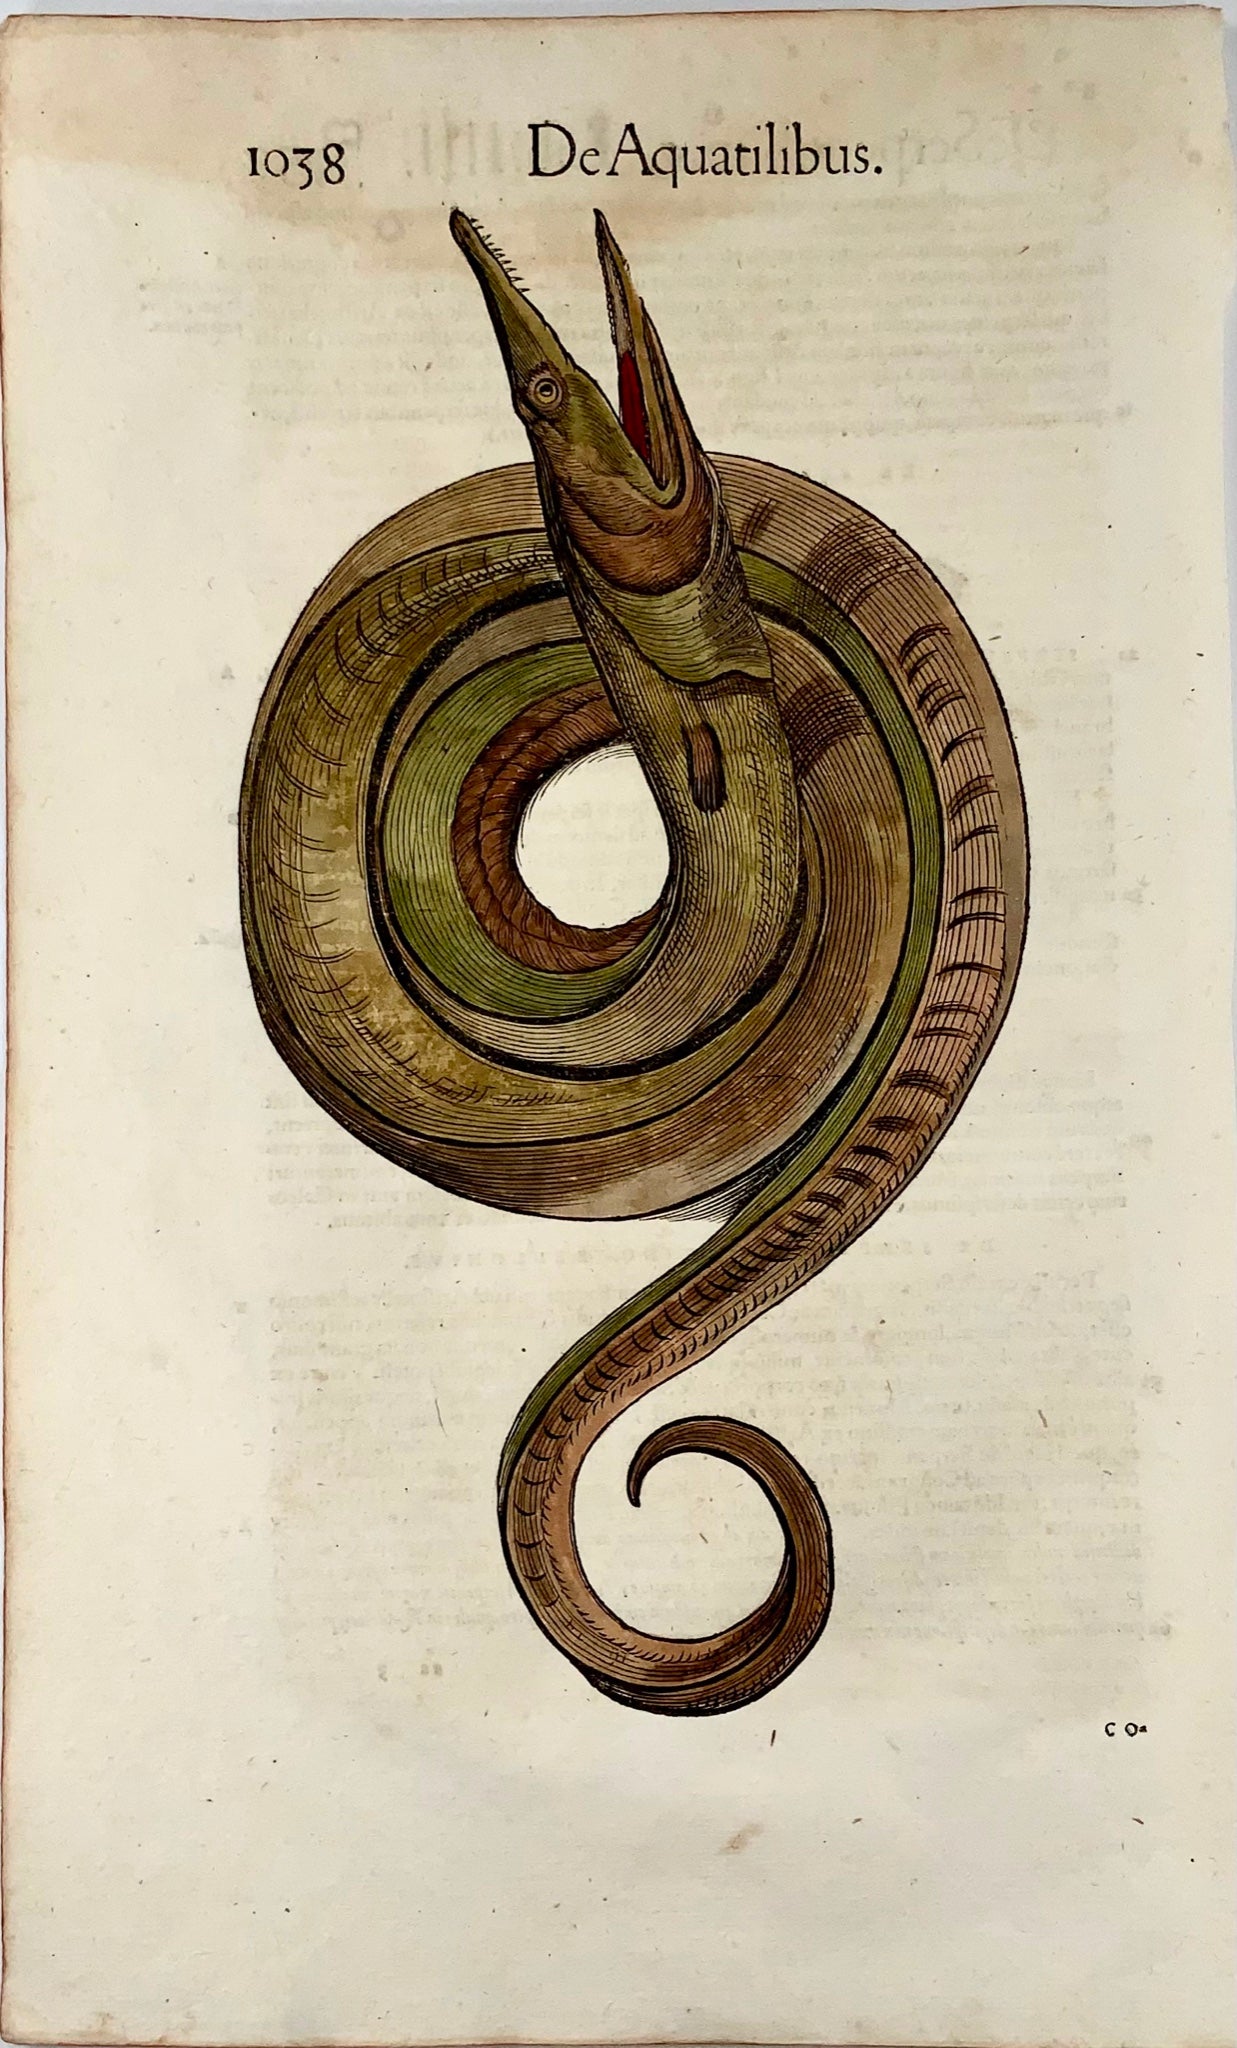 1558 Serpent de mer, Conrad Gesner, gravure sur bois in-folio, coloriée à la main, Premier État